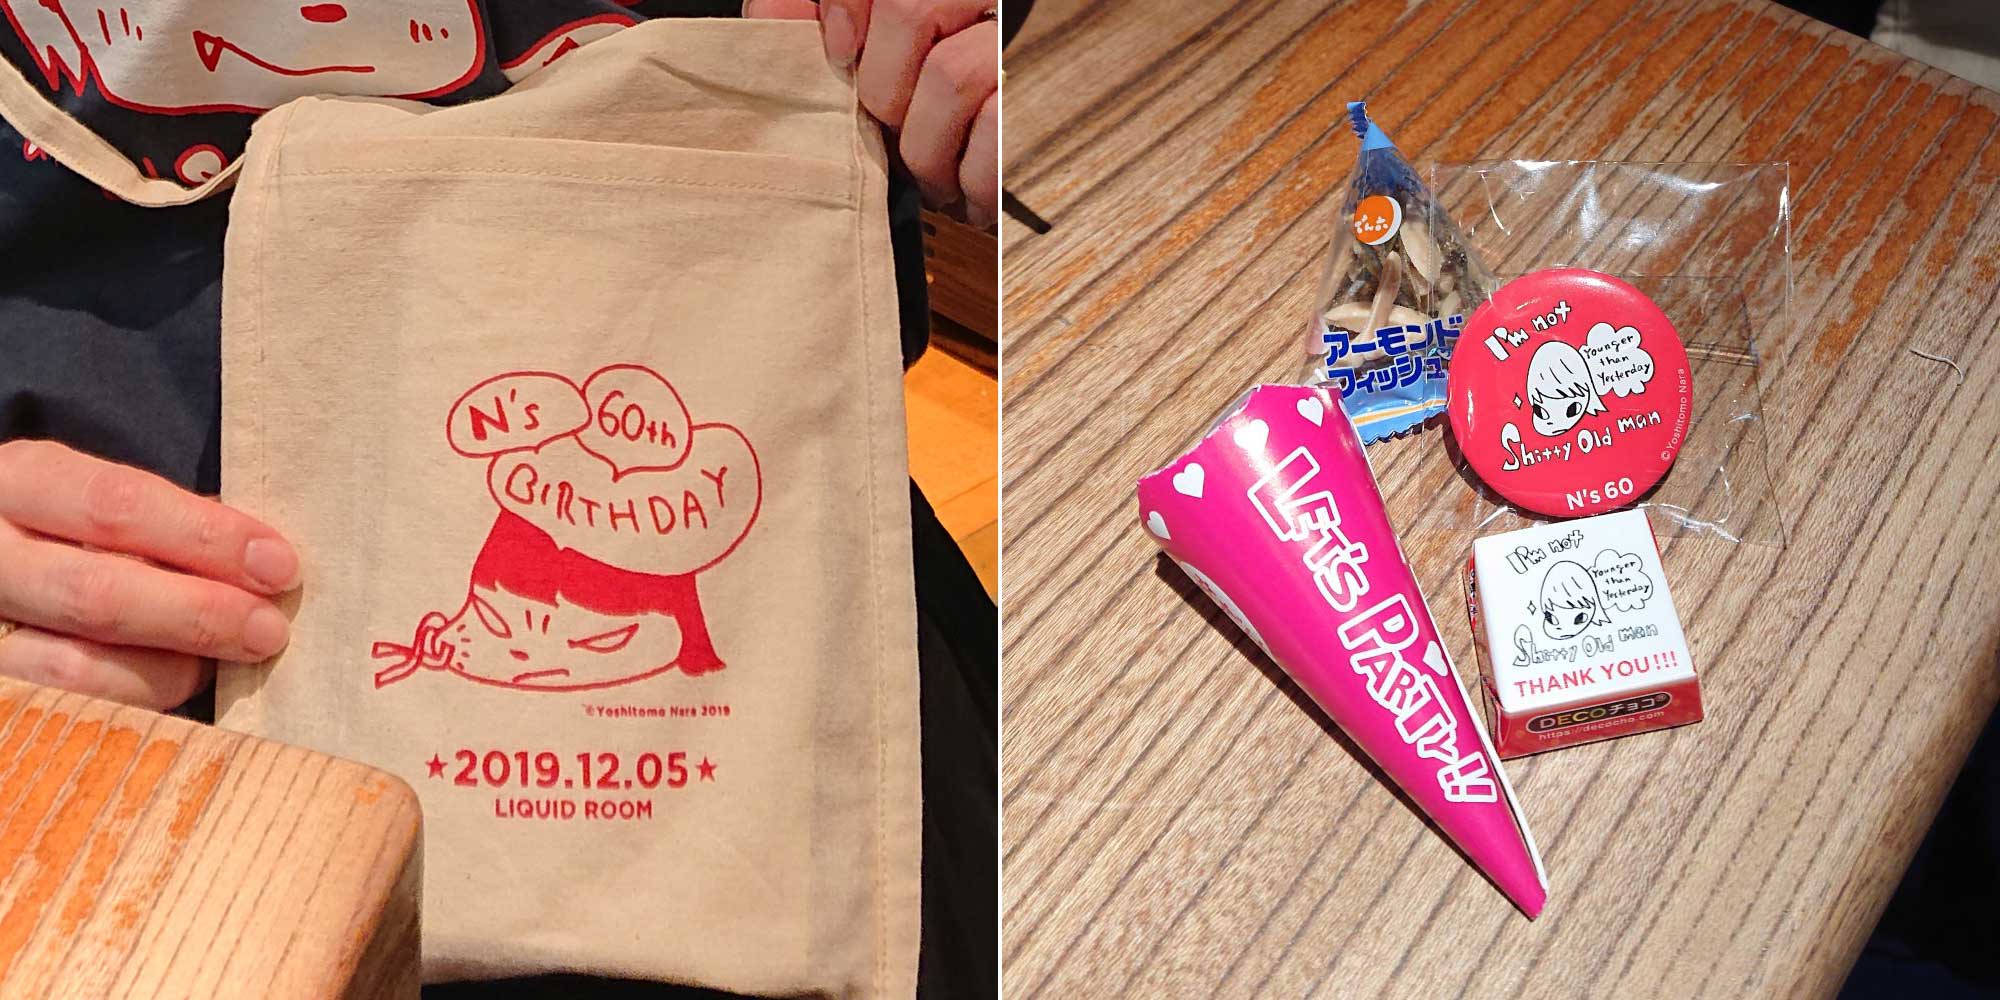 奈良美智還暦祝い誕生会のお土産と記念品グッズ